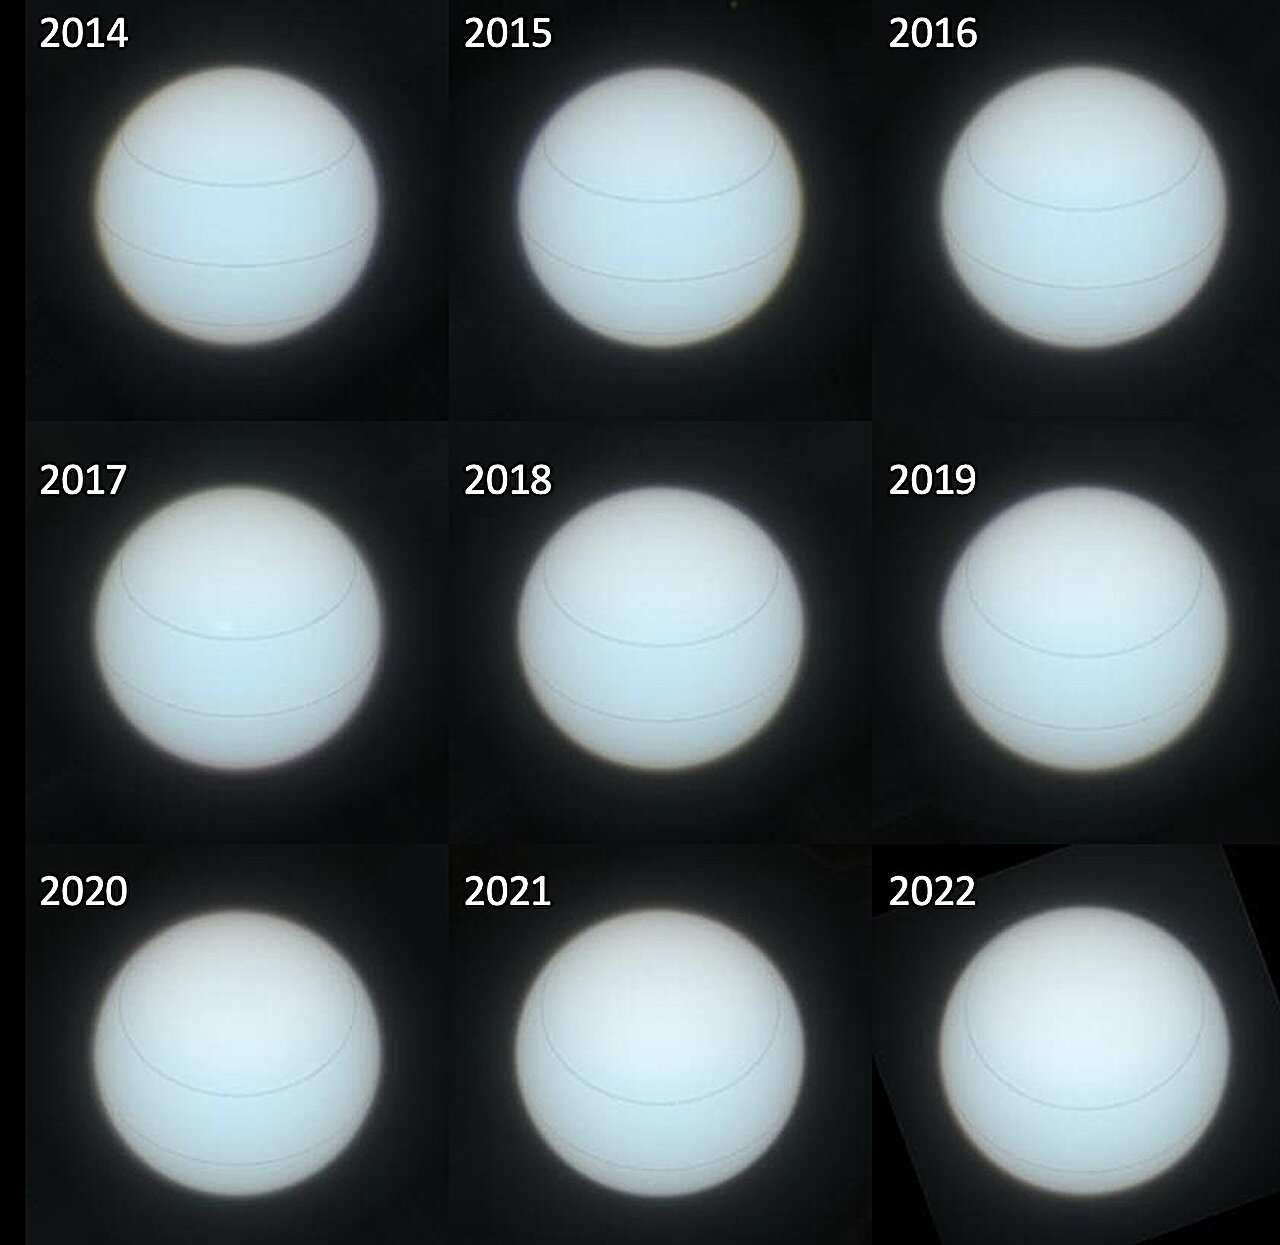 Urano cambio de color